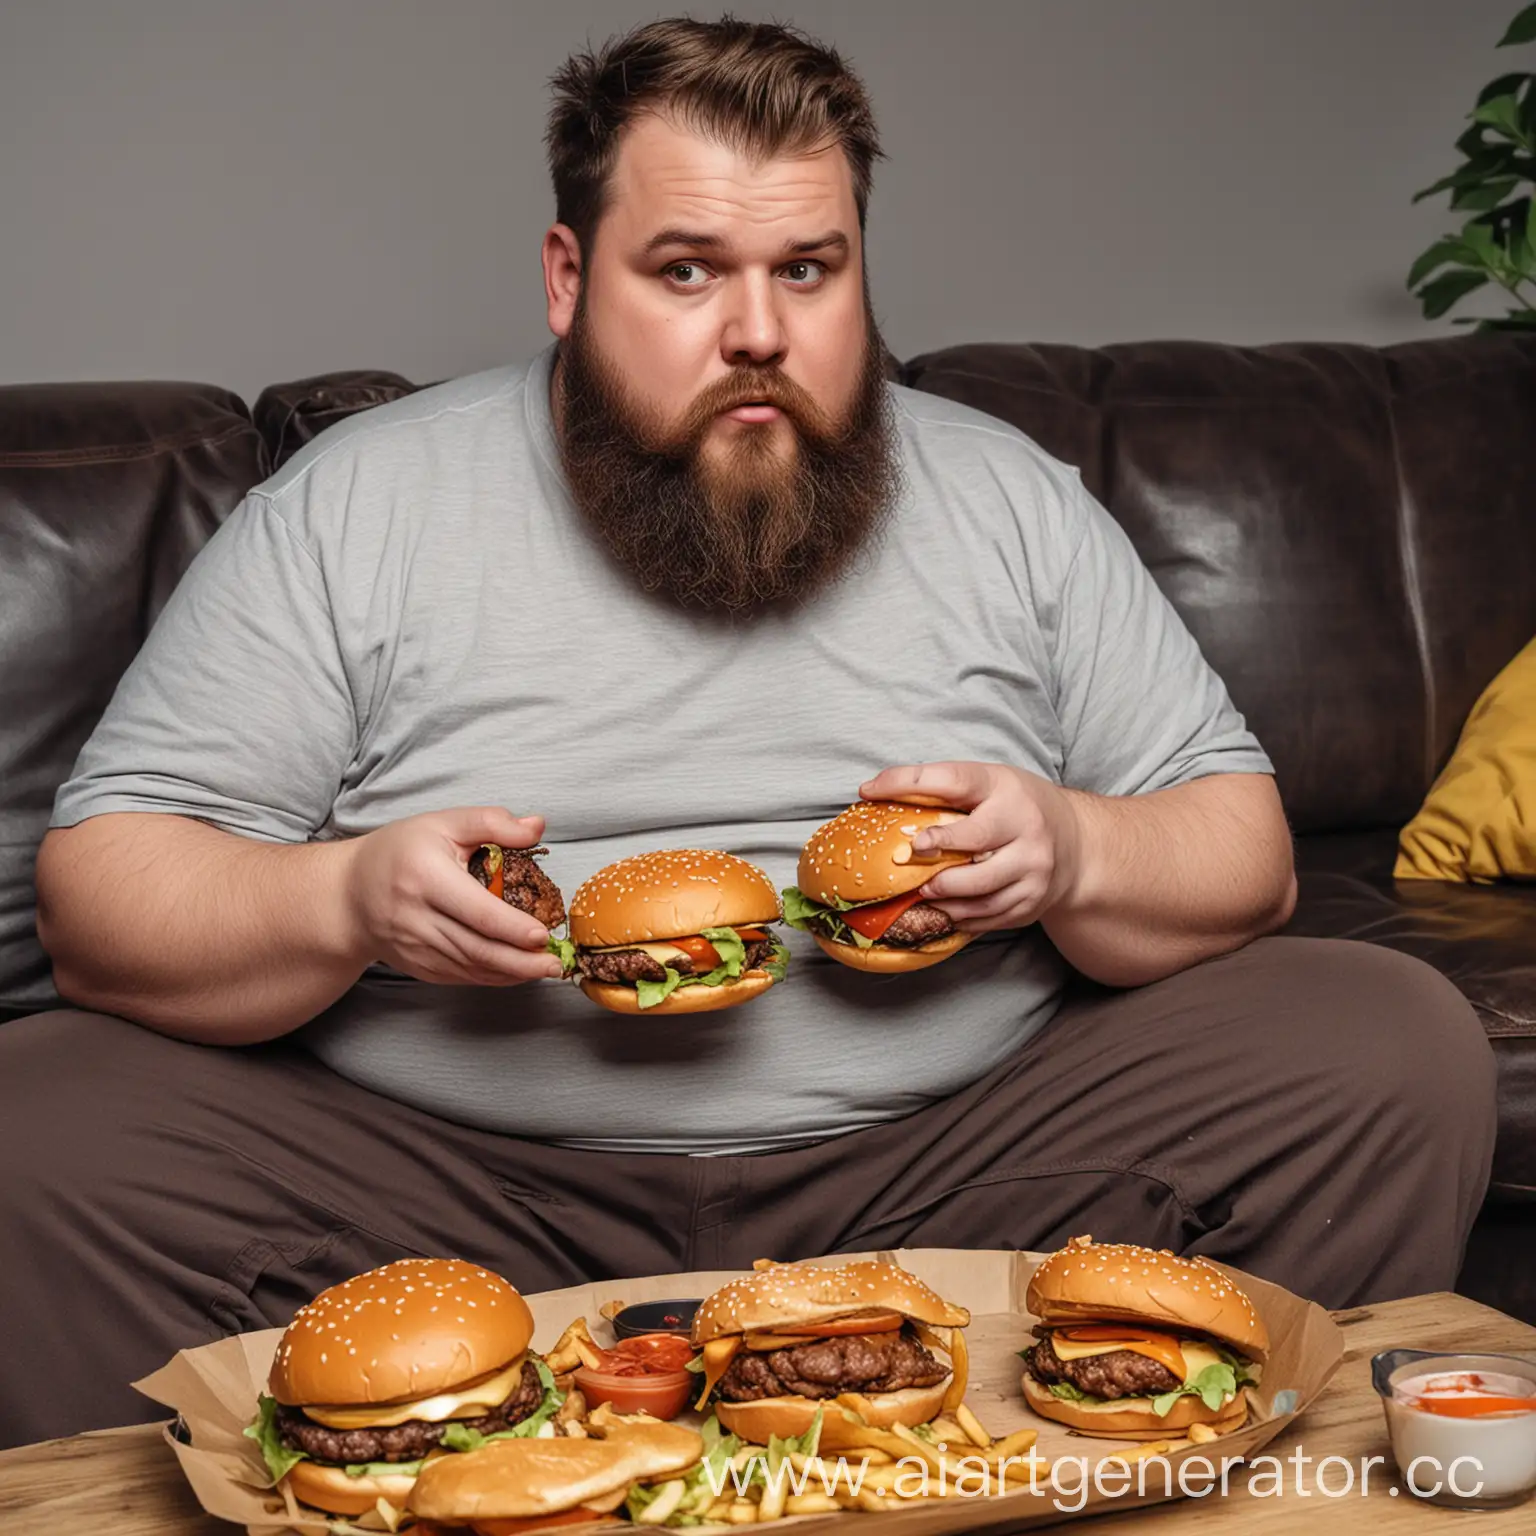 Толстый и бородатый мужчина сидит на диване кушая бургеры и играя в приставку.

